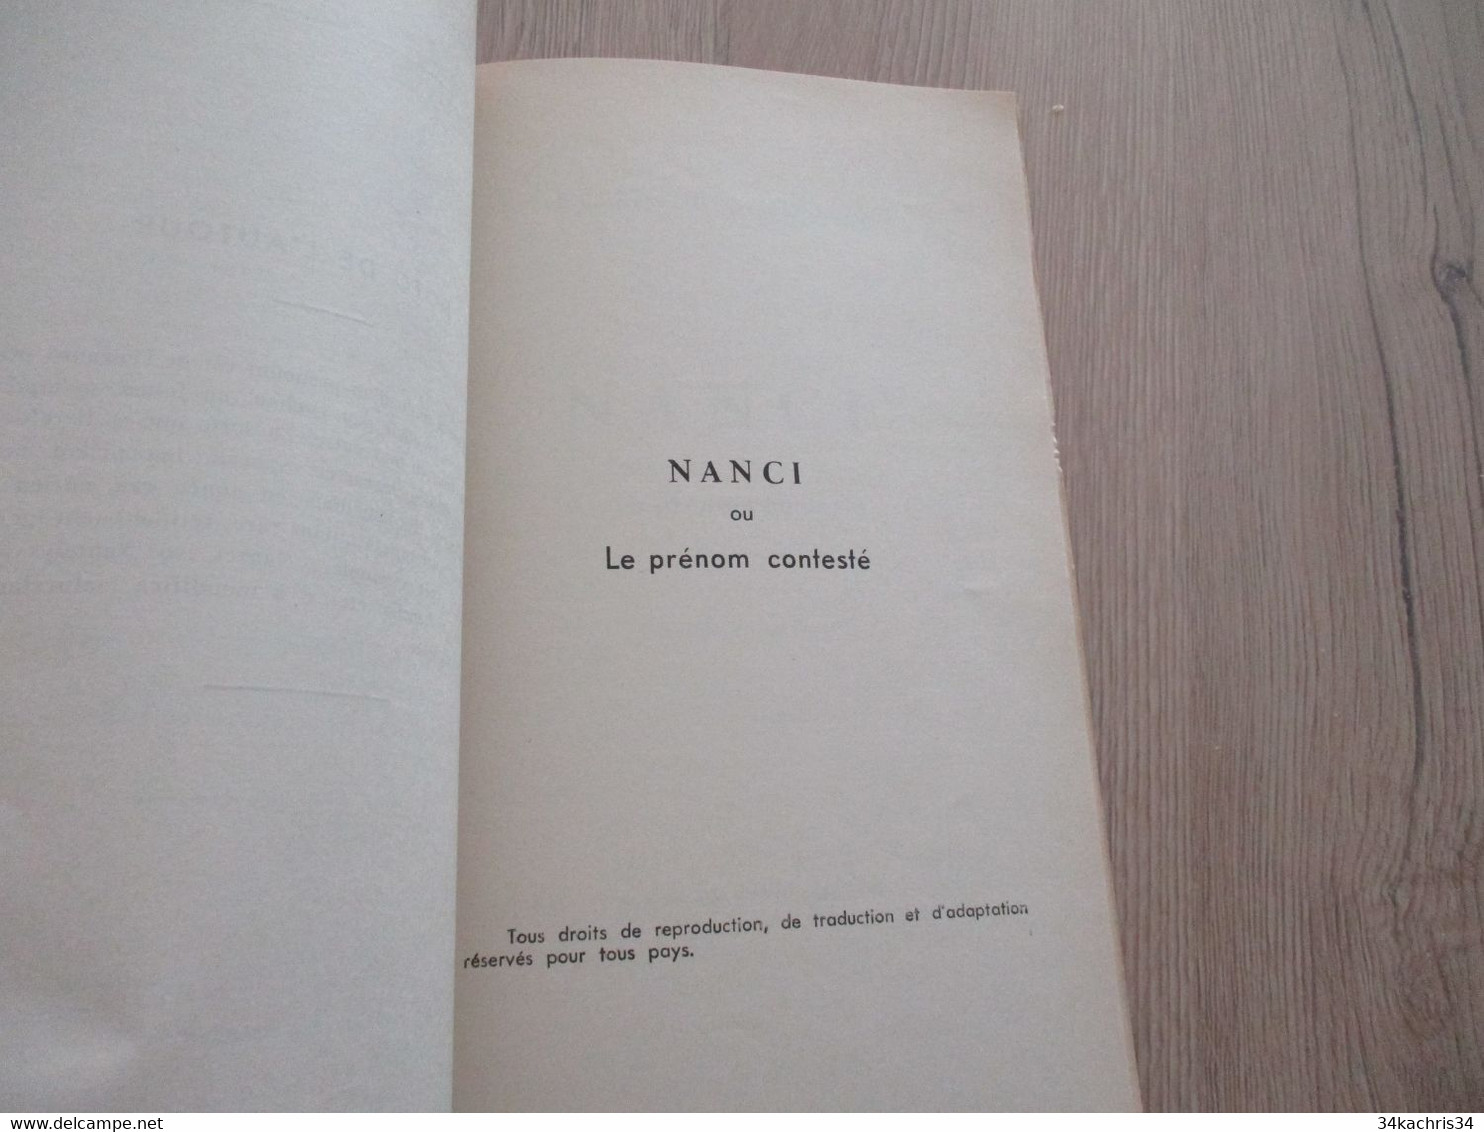 Félibrige Occitan provençal Bilingue Eigard G.Raizon 1960 Comédie Nanci  envoi de l'Auteur à Roux Ami de Lenguedoc